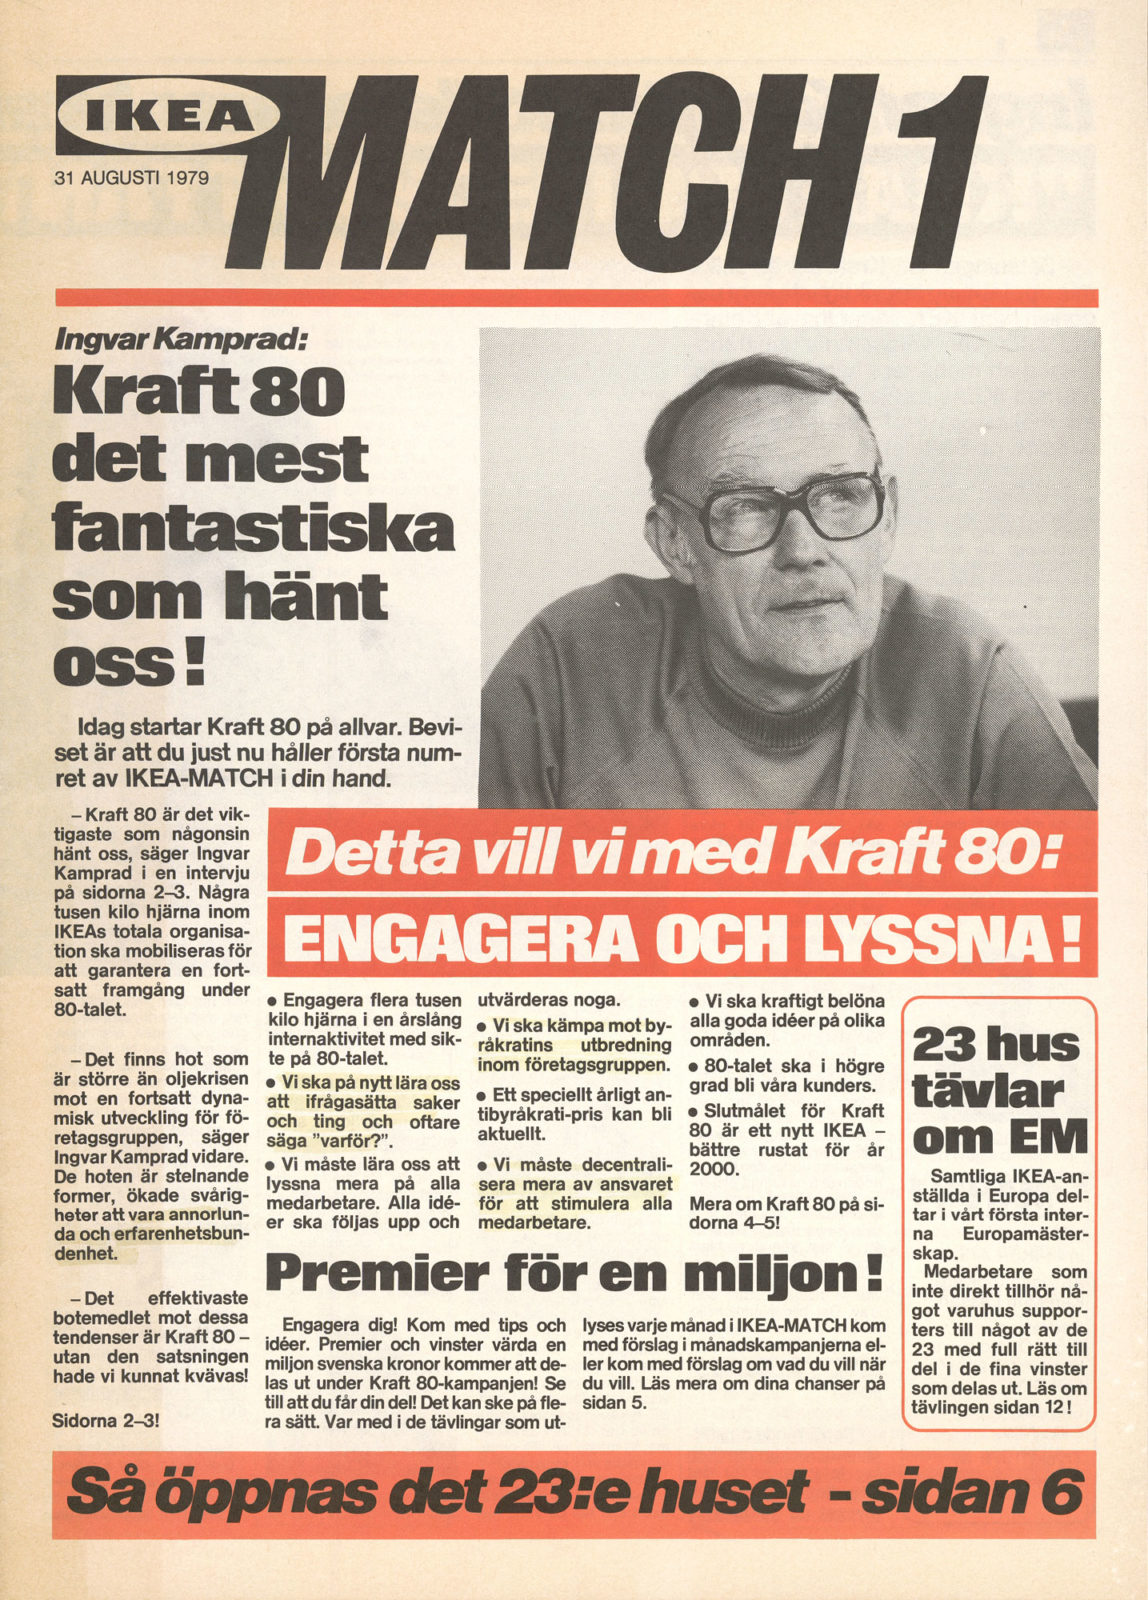 Omslag till interntidningen MATCH från IKEA med foto av Ingvar Kamprad och rubrik om projektet Styrka 80.